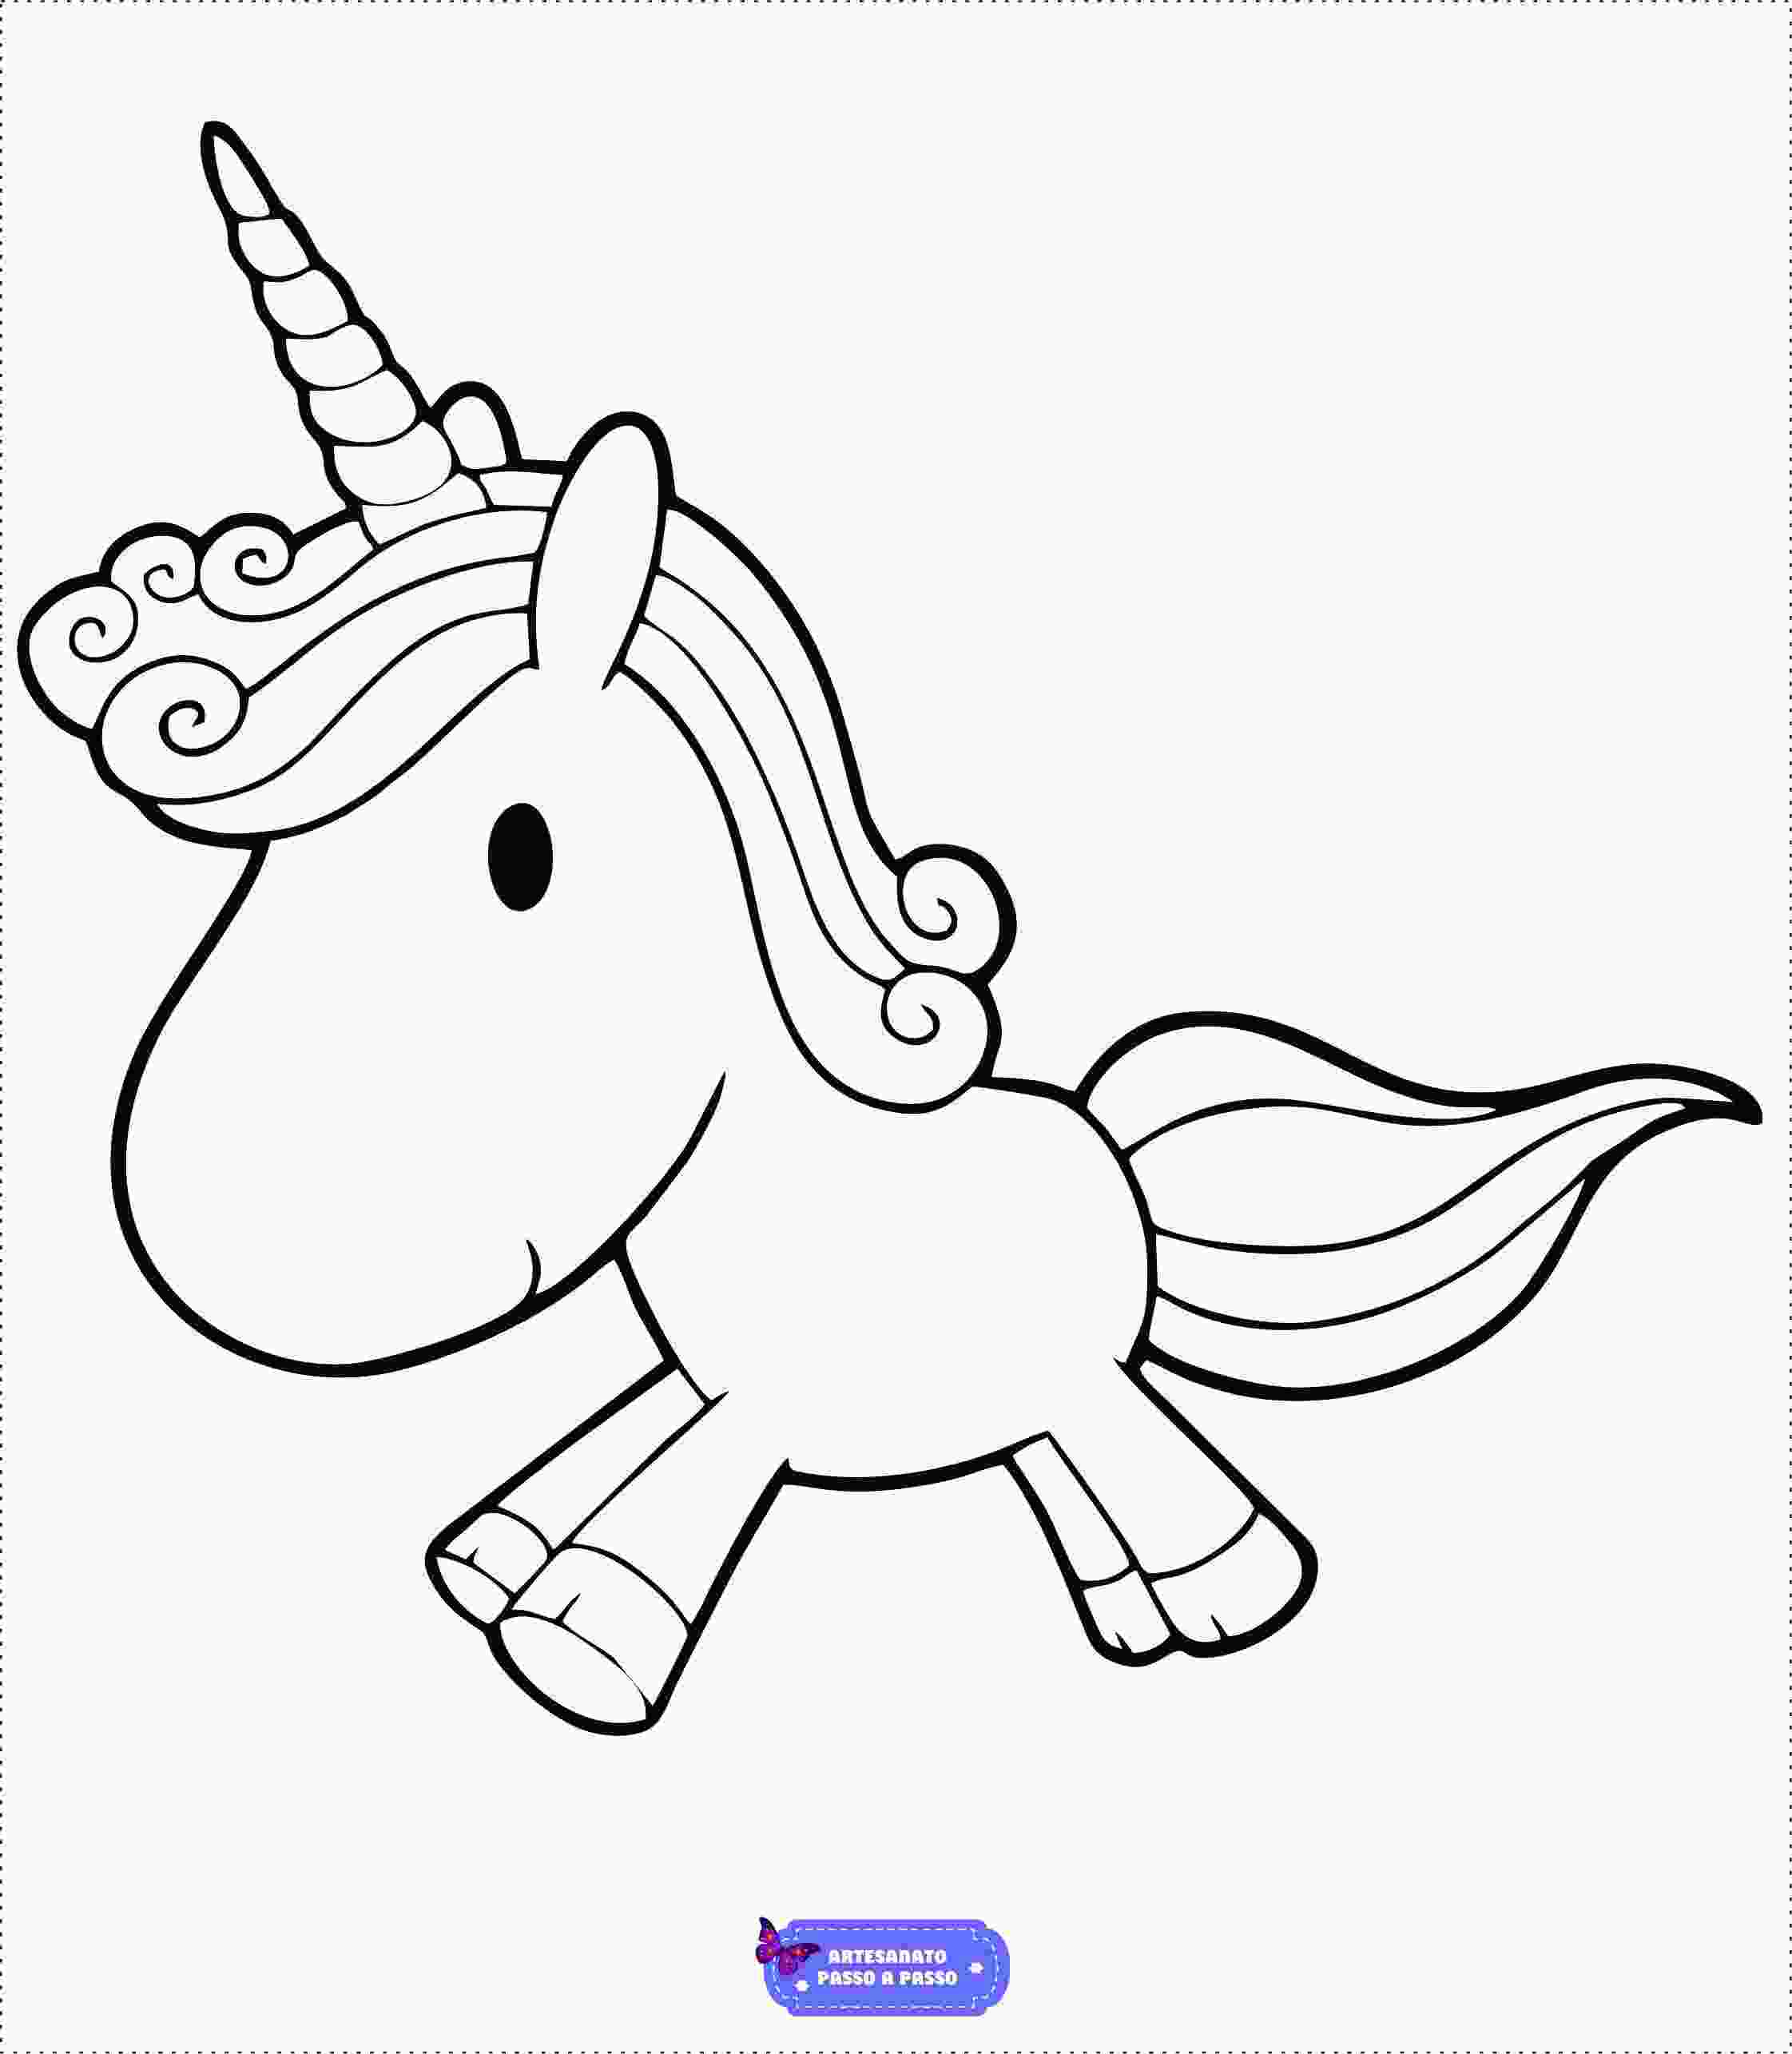 COMO Desenhar um UNICÓRNIO FOFINHO KAWAII  Unicornio desenho, Unicórnio,  Coisas para desenhar